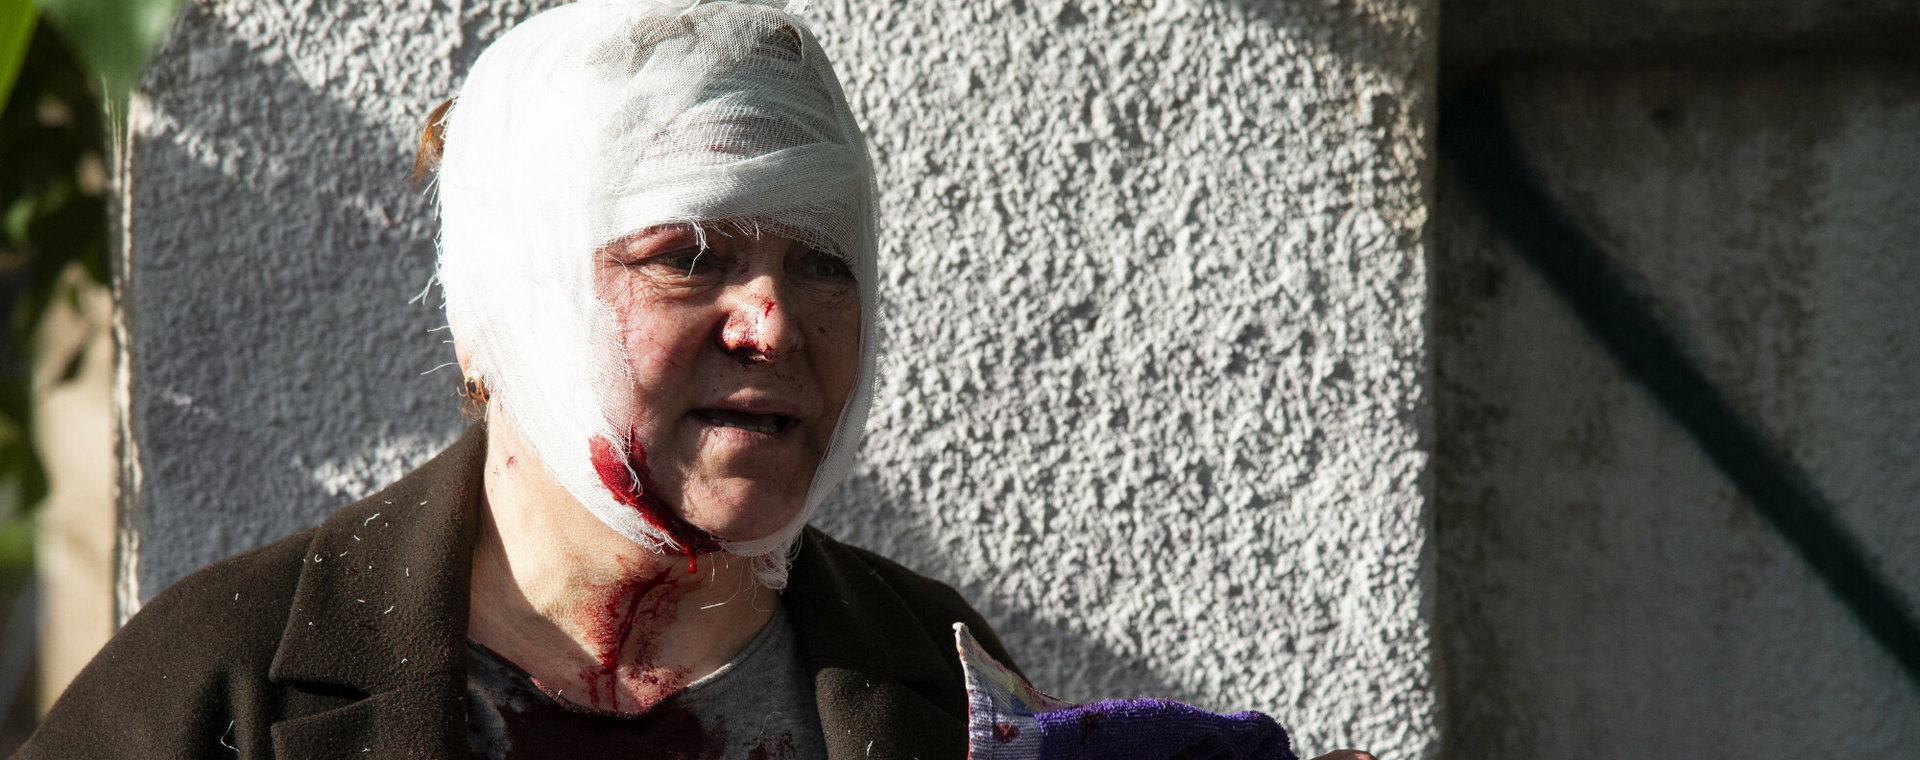 10.10.2022 Kijow, Ukraina. Rosyjski ostrzal Kijowa. Zginelo 5 cywilow, 24 osoby sa ranne. 